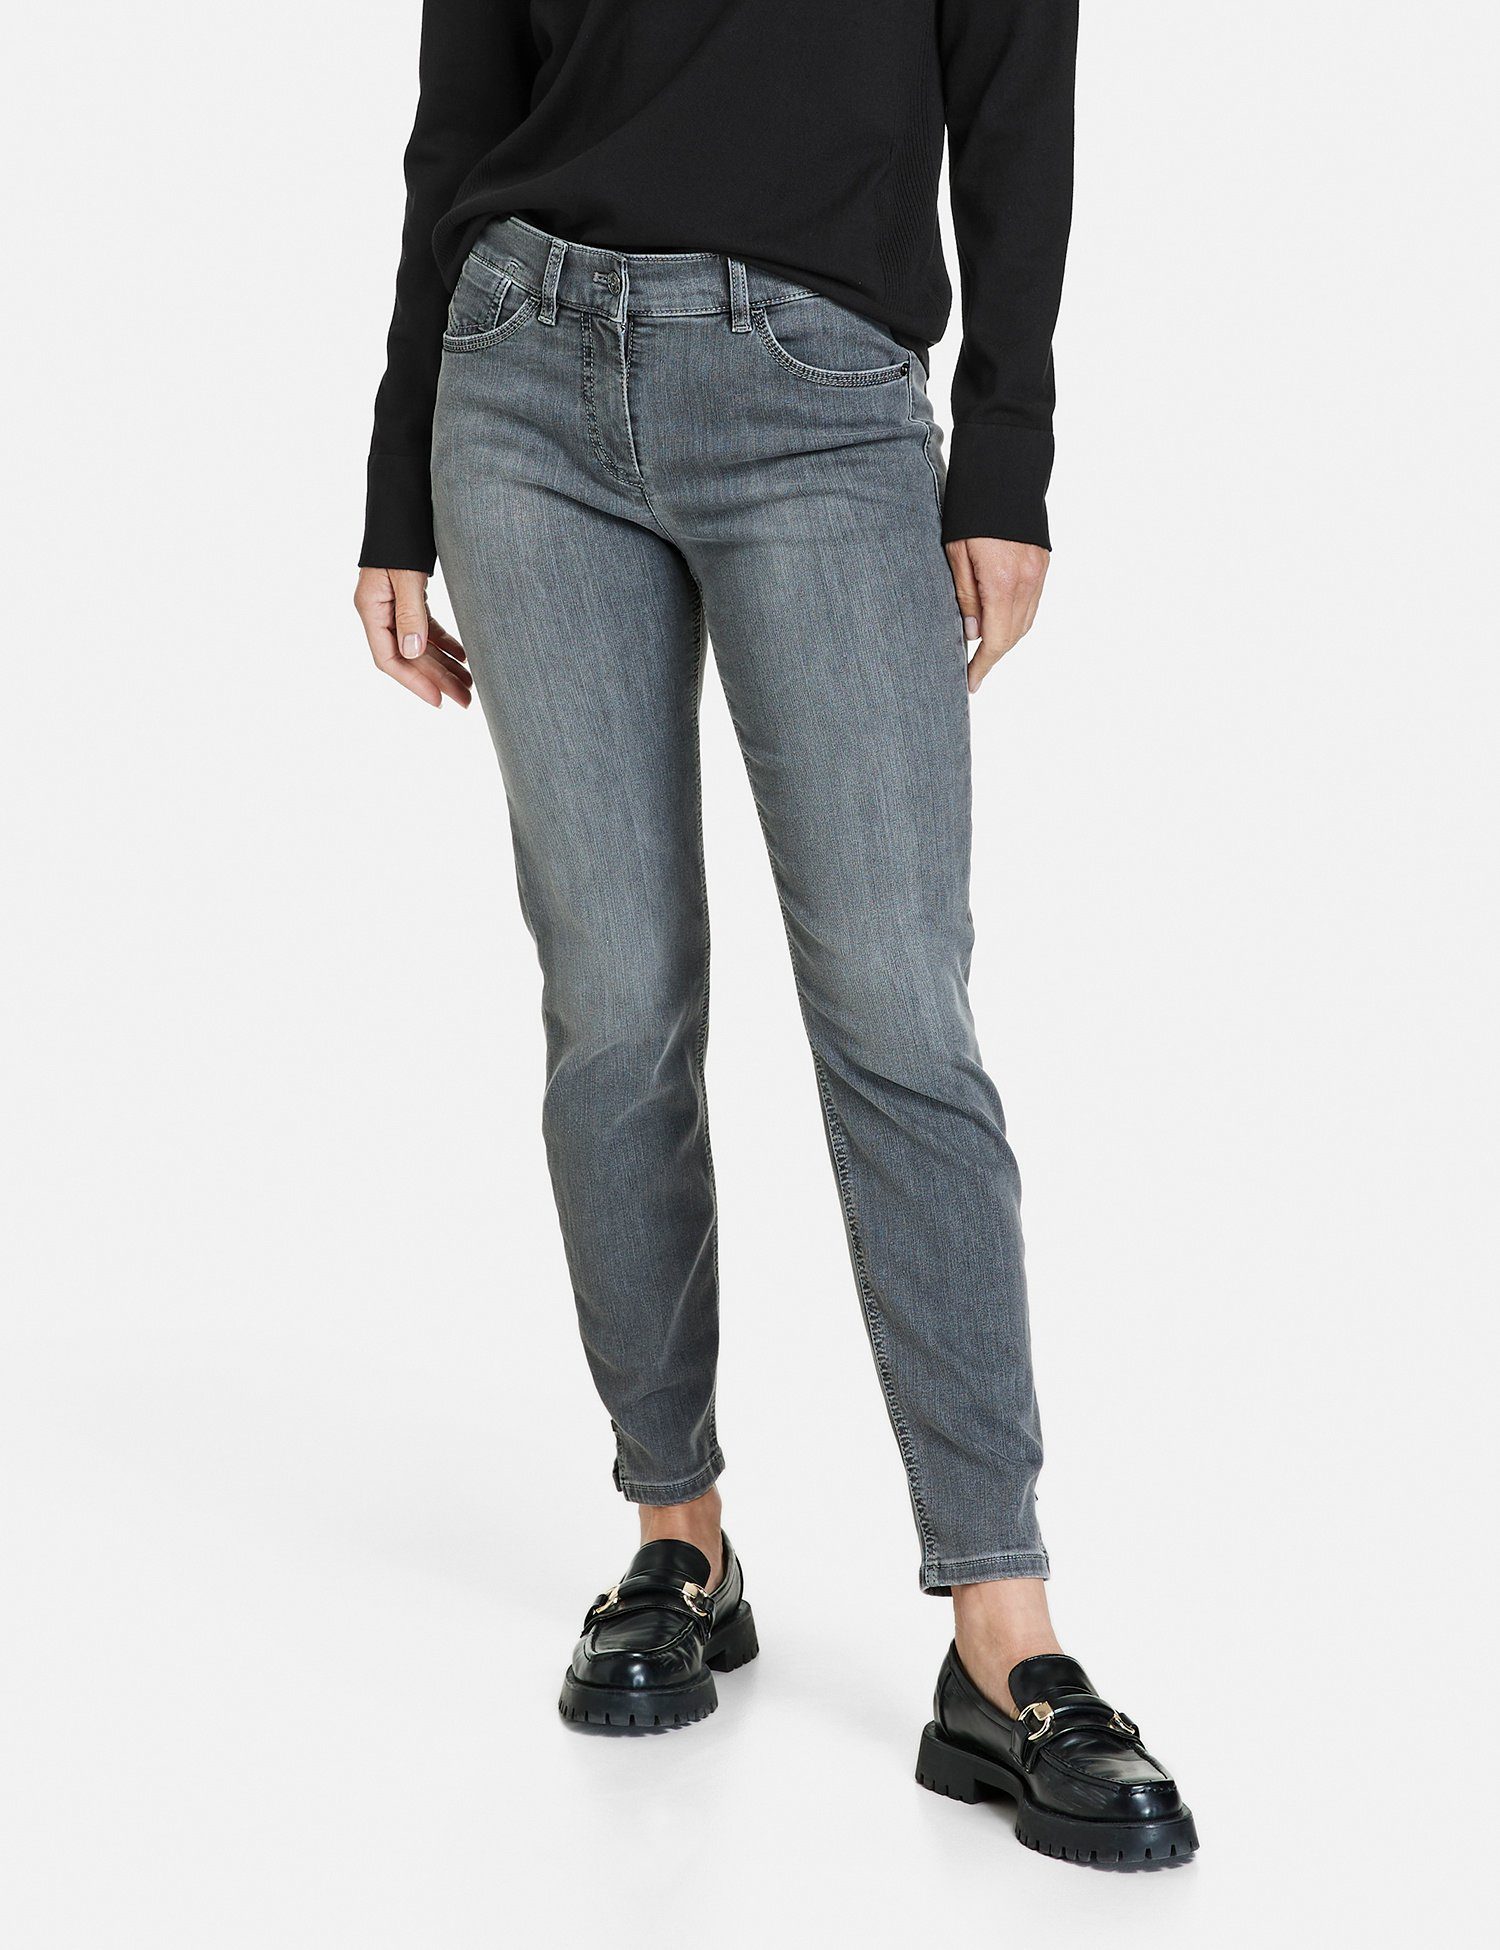 GERRY WEBER Jeans mit Anthra CROPPED BEST4ME Denim 7/8-Jeans use 5-Pocket